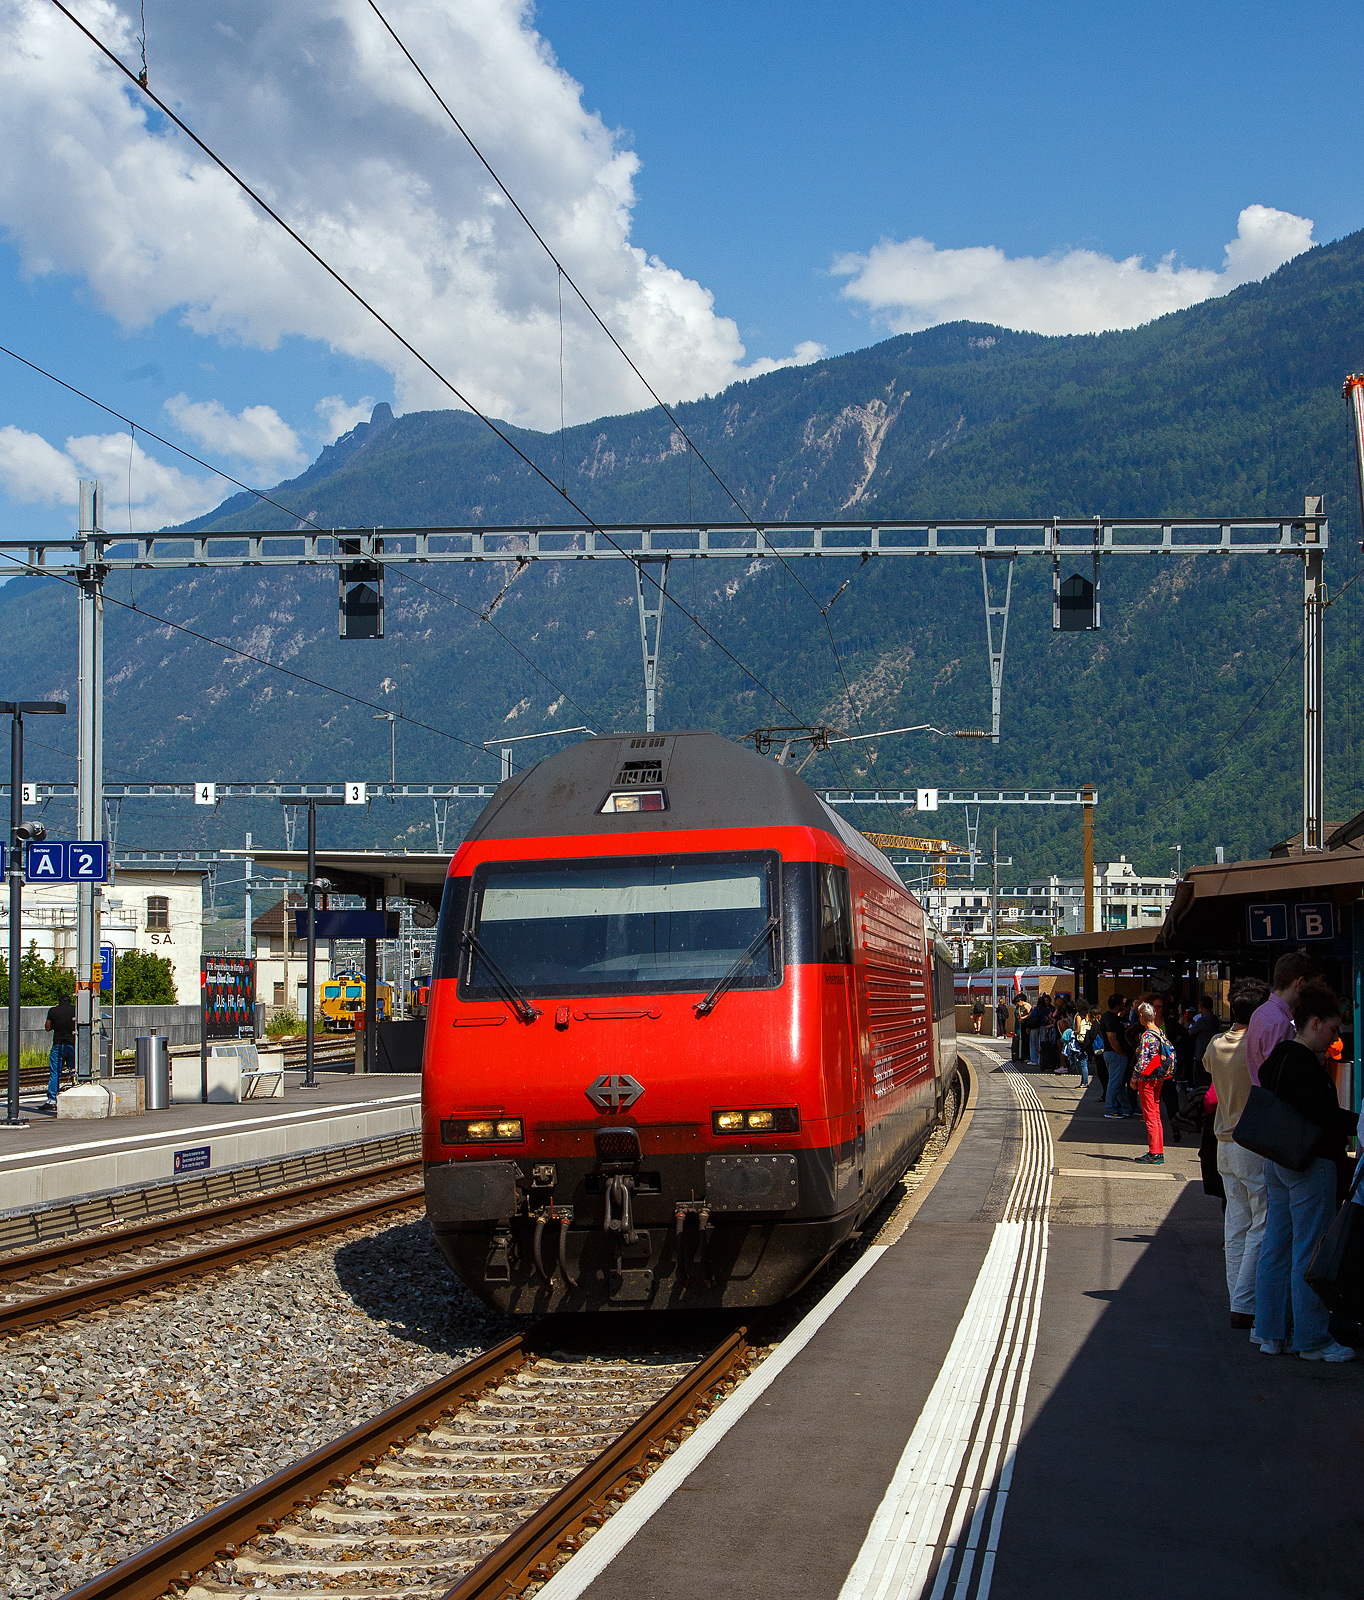 Die SBB Re 460 069-8  Verkehrshaus  (91 85 4 460 069-8 CH-SBB) fährt am 26 Mai 2023, mit dem IR 90 von Brig nach Genève-Aéroport (Umlauf IR 1724), in den Bahnhof Martigny ein. Da der Zug recht lang war wurde im Sandwich gefahren, so war am Zugschluss die SBB Re 460 041-7  Mendrisiotto .

Die Re 460 069-8 wurde 1993 von der SLM (Schweizerischen Lokomotiv- und Maschinenfabrik in Winterthur) unter der Fabriknummer 5542 gebaut, der elektrische Teil ist von der ABB (Asea Brown Boveri).
